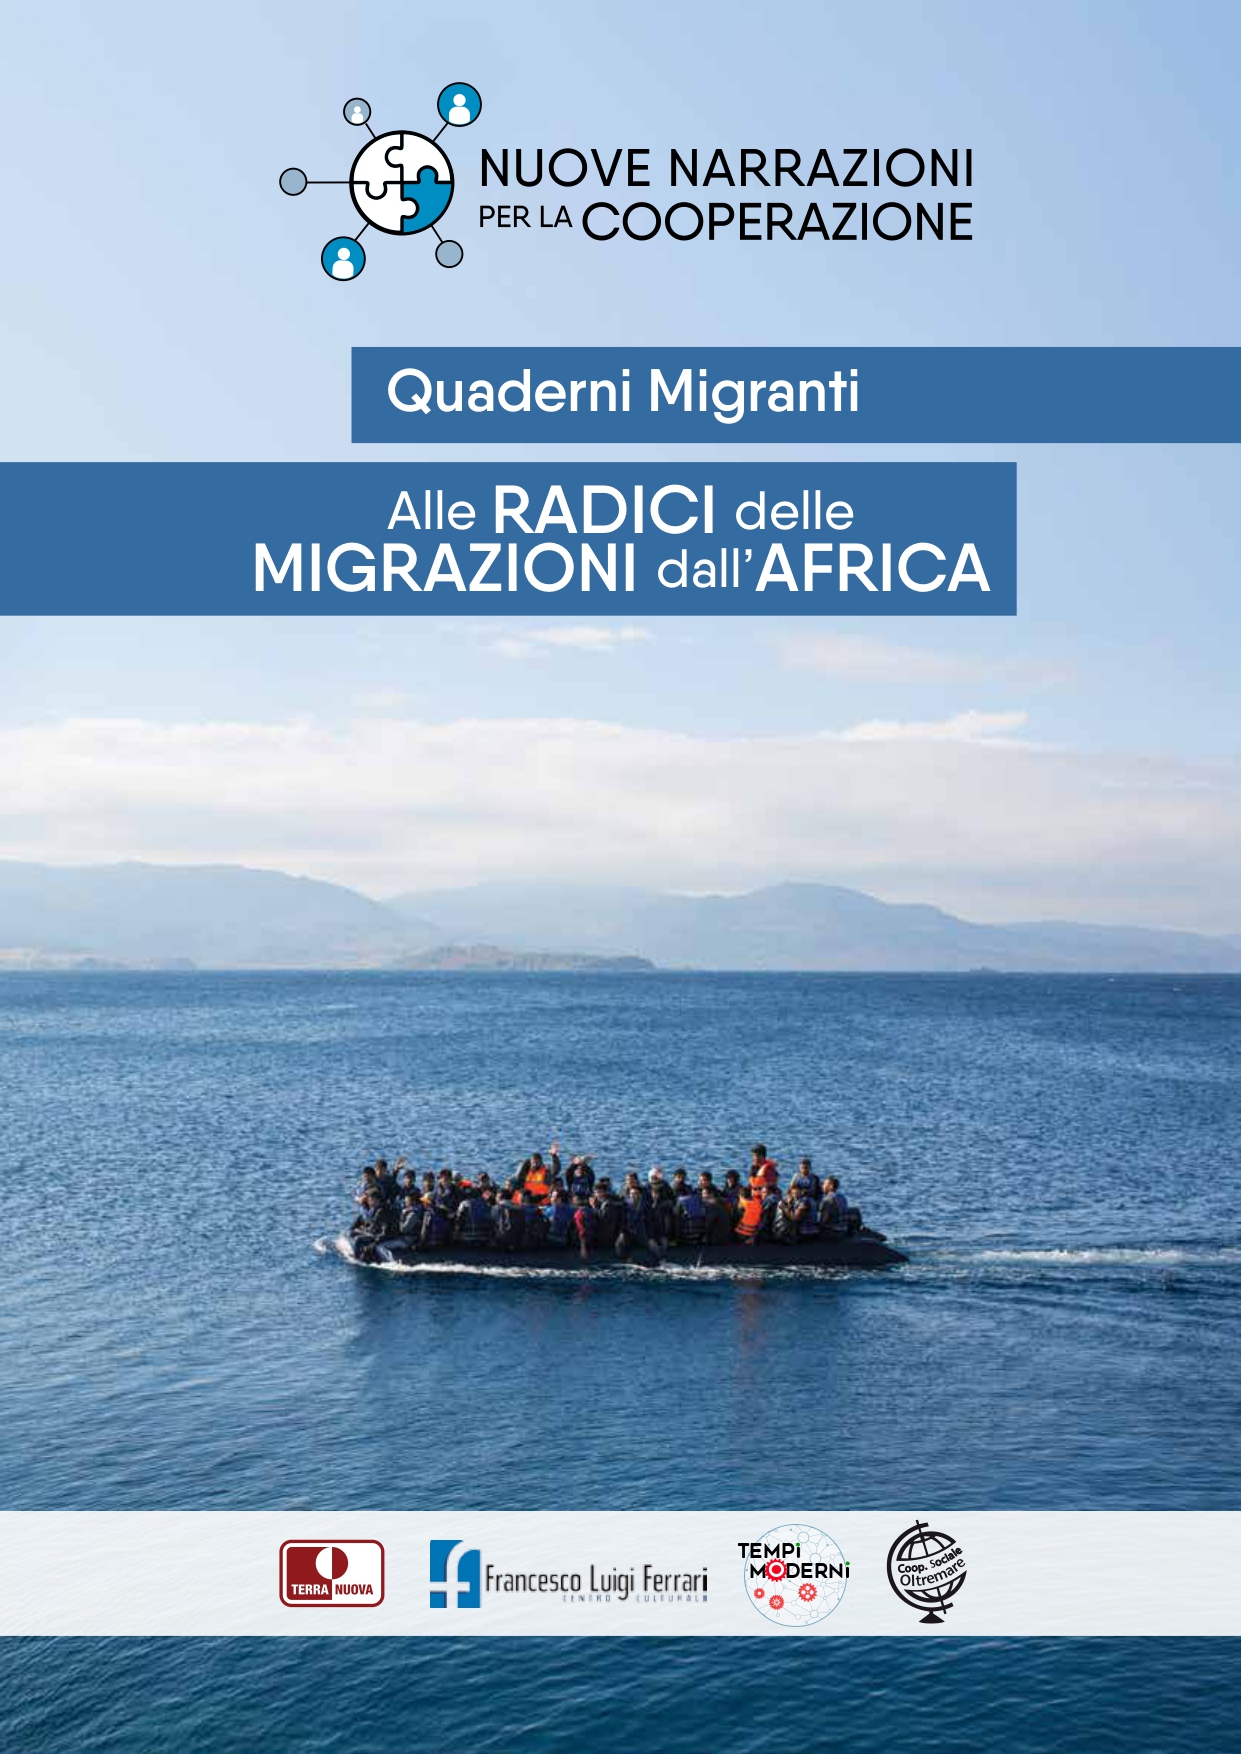 Primo Quaderno migrante “Alle radici delle migrazioni dall’Africa”